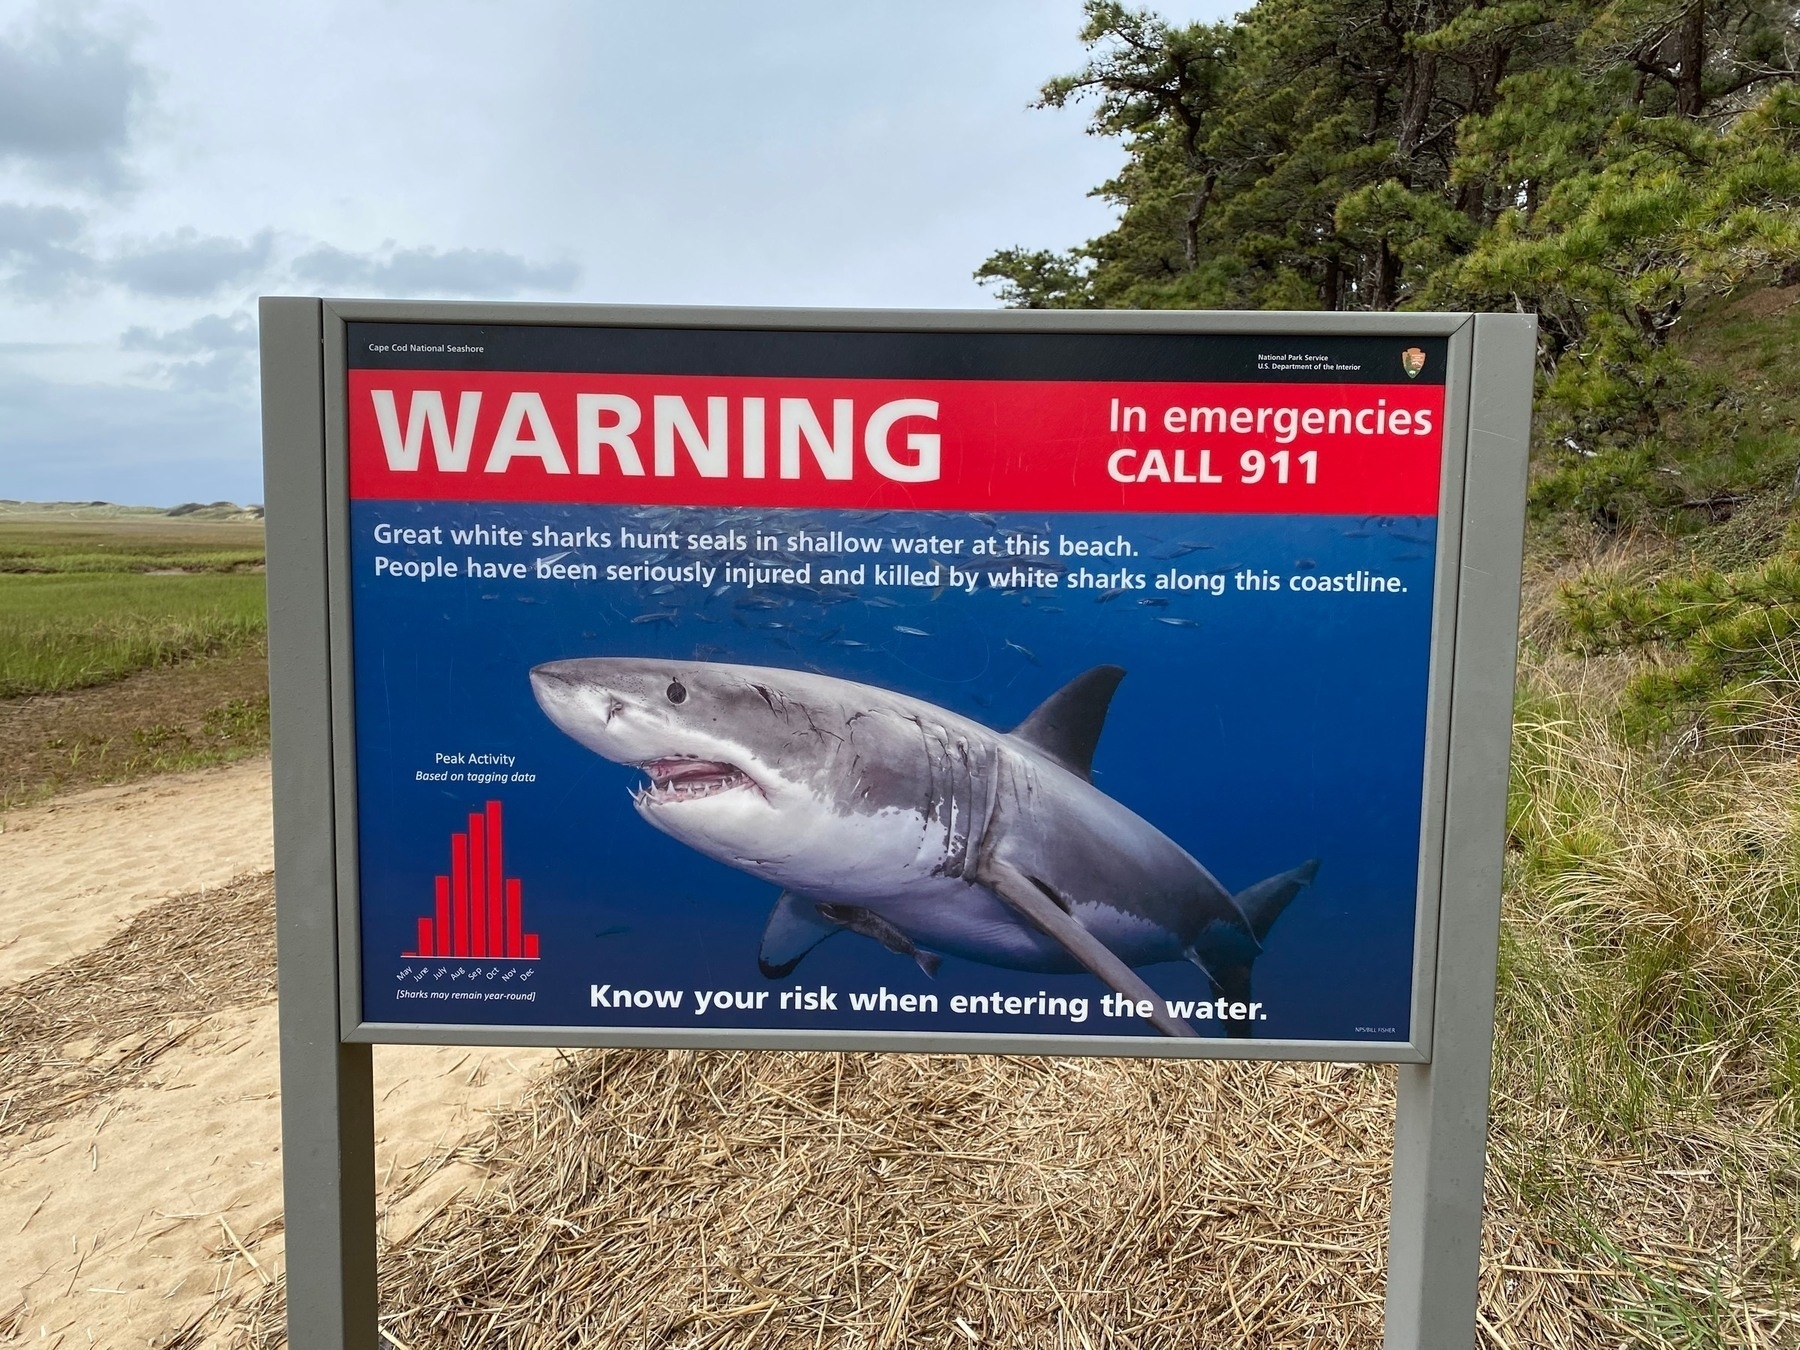 Shark warning sign near a salt marsh.